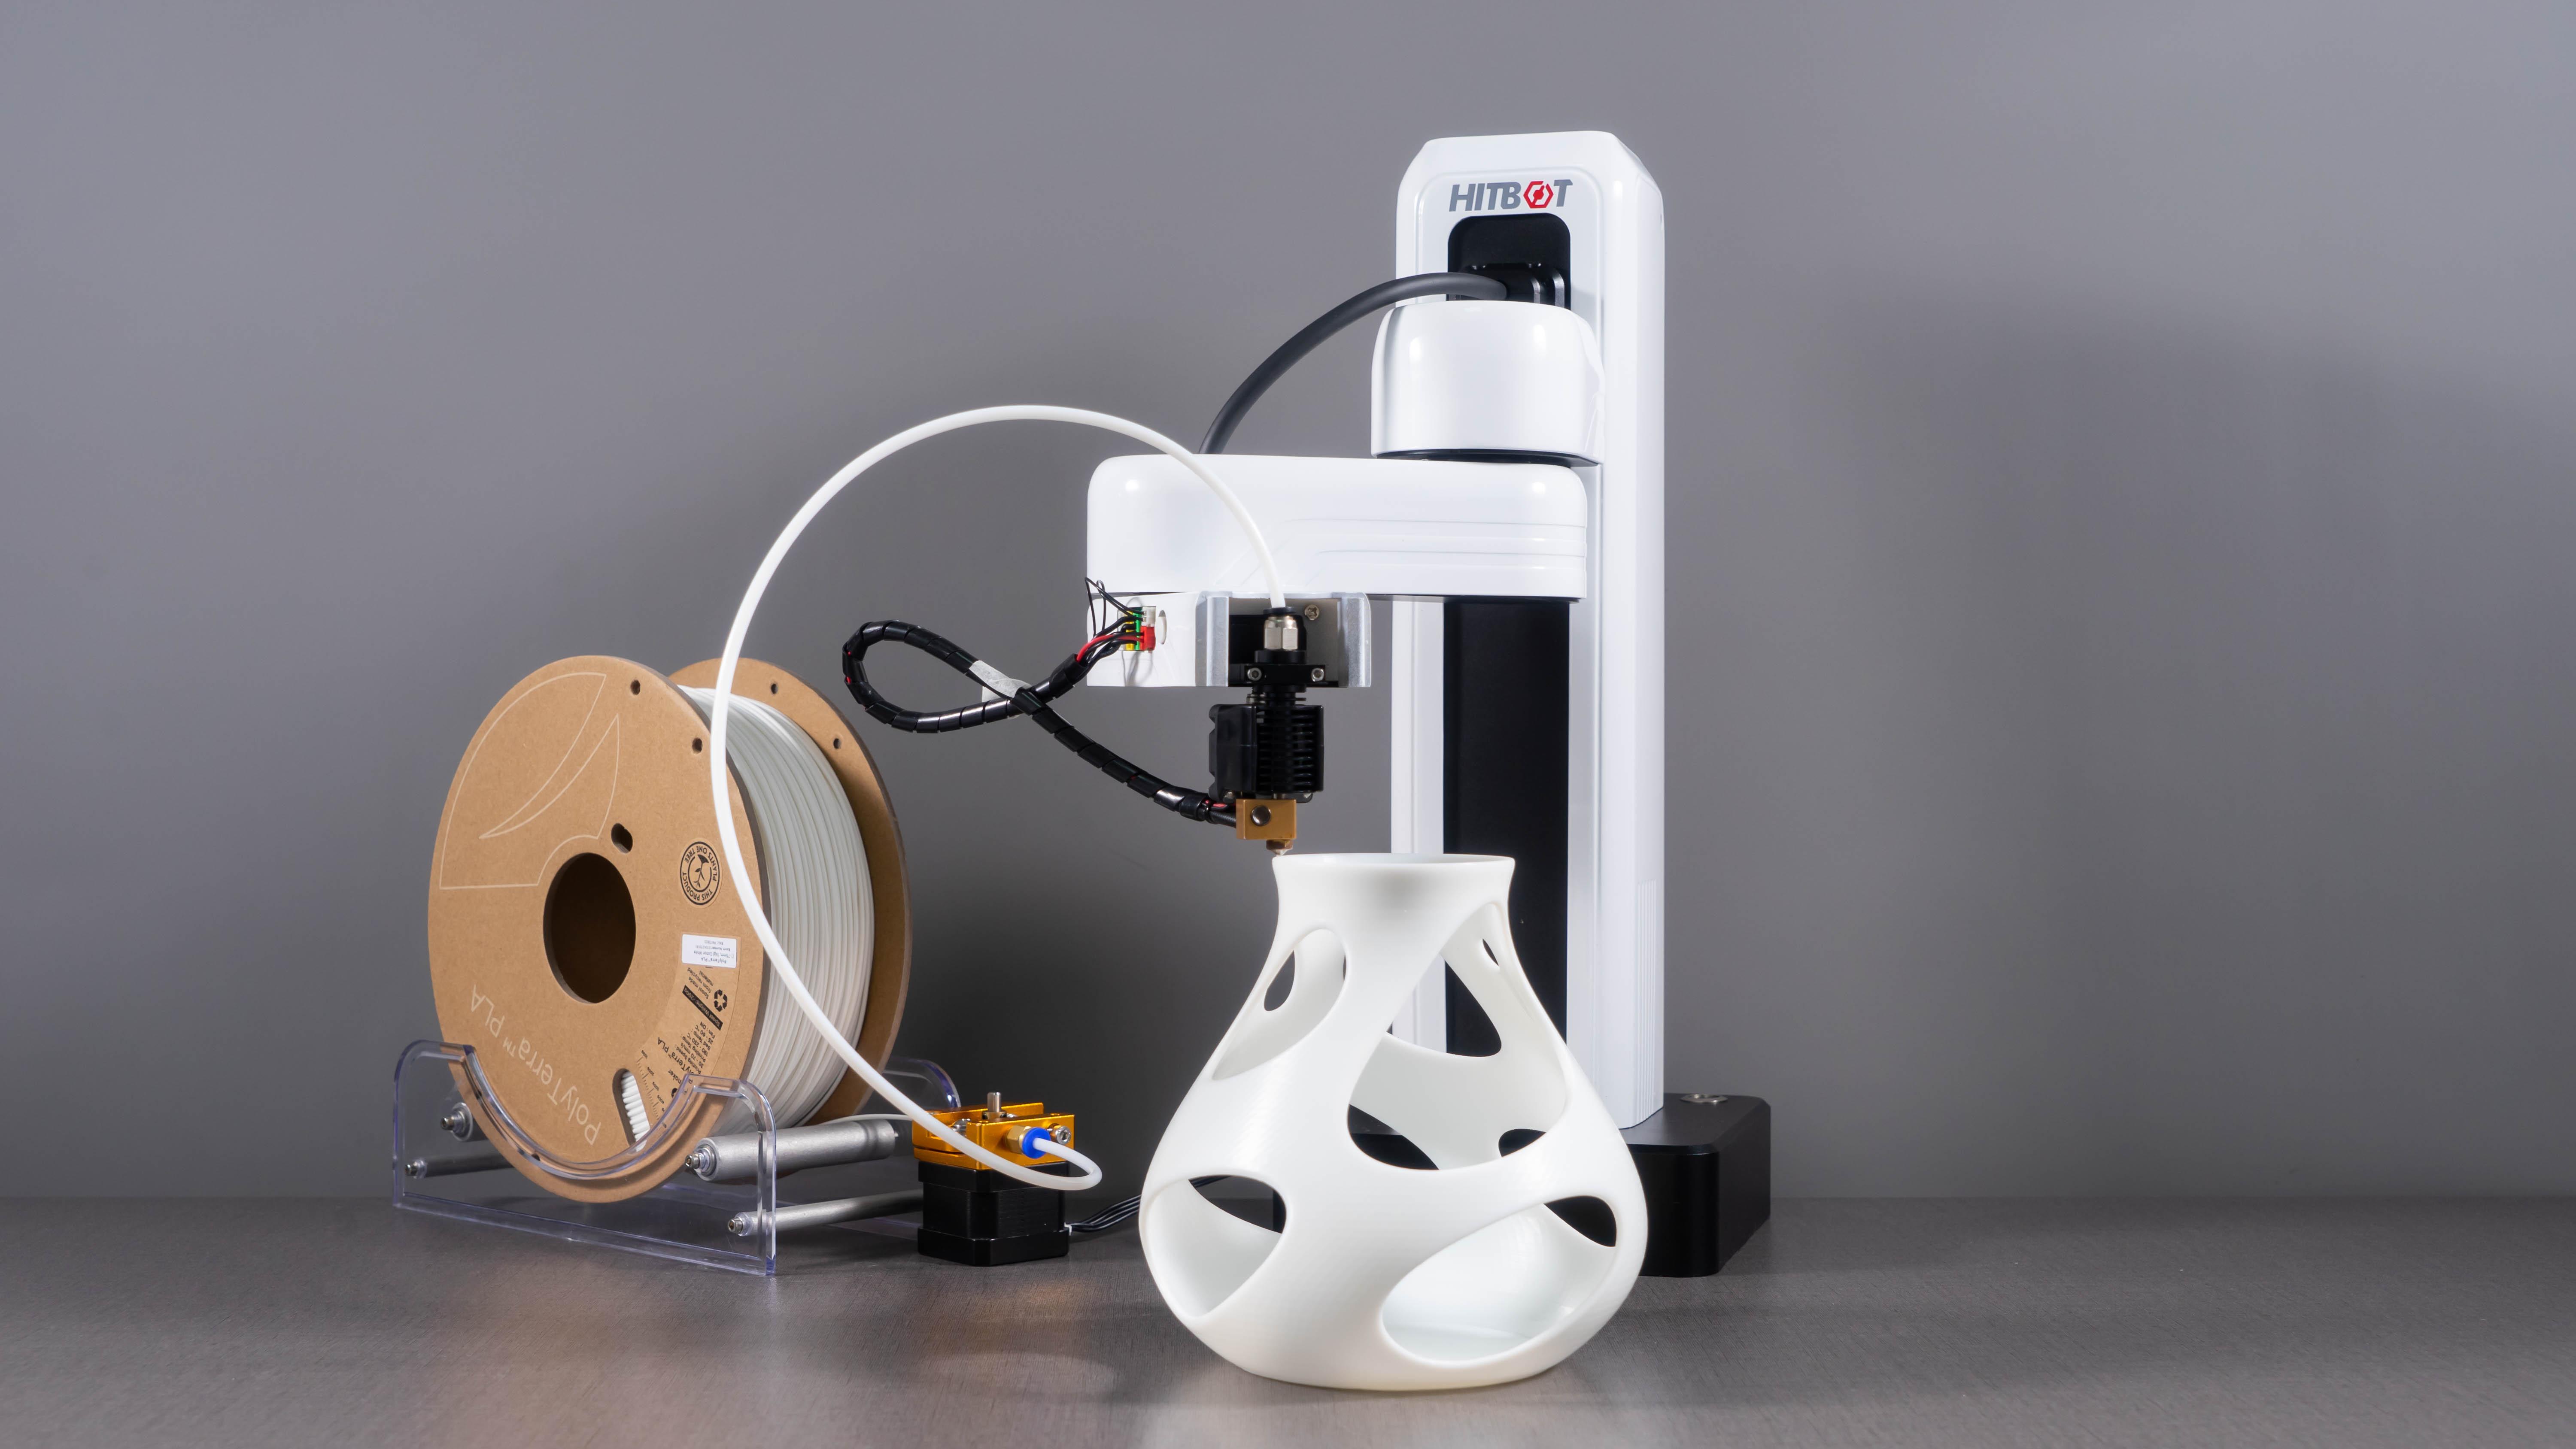 Braço robótico colaborativo para impressão 3D